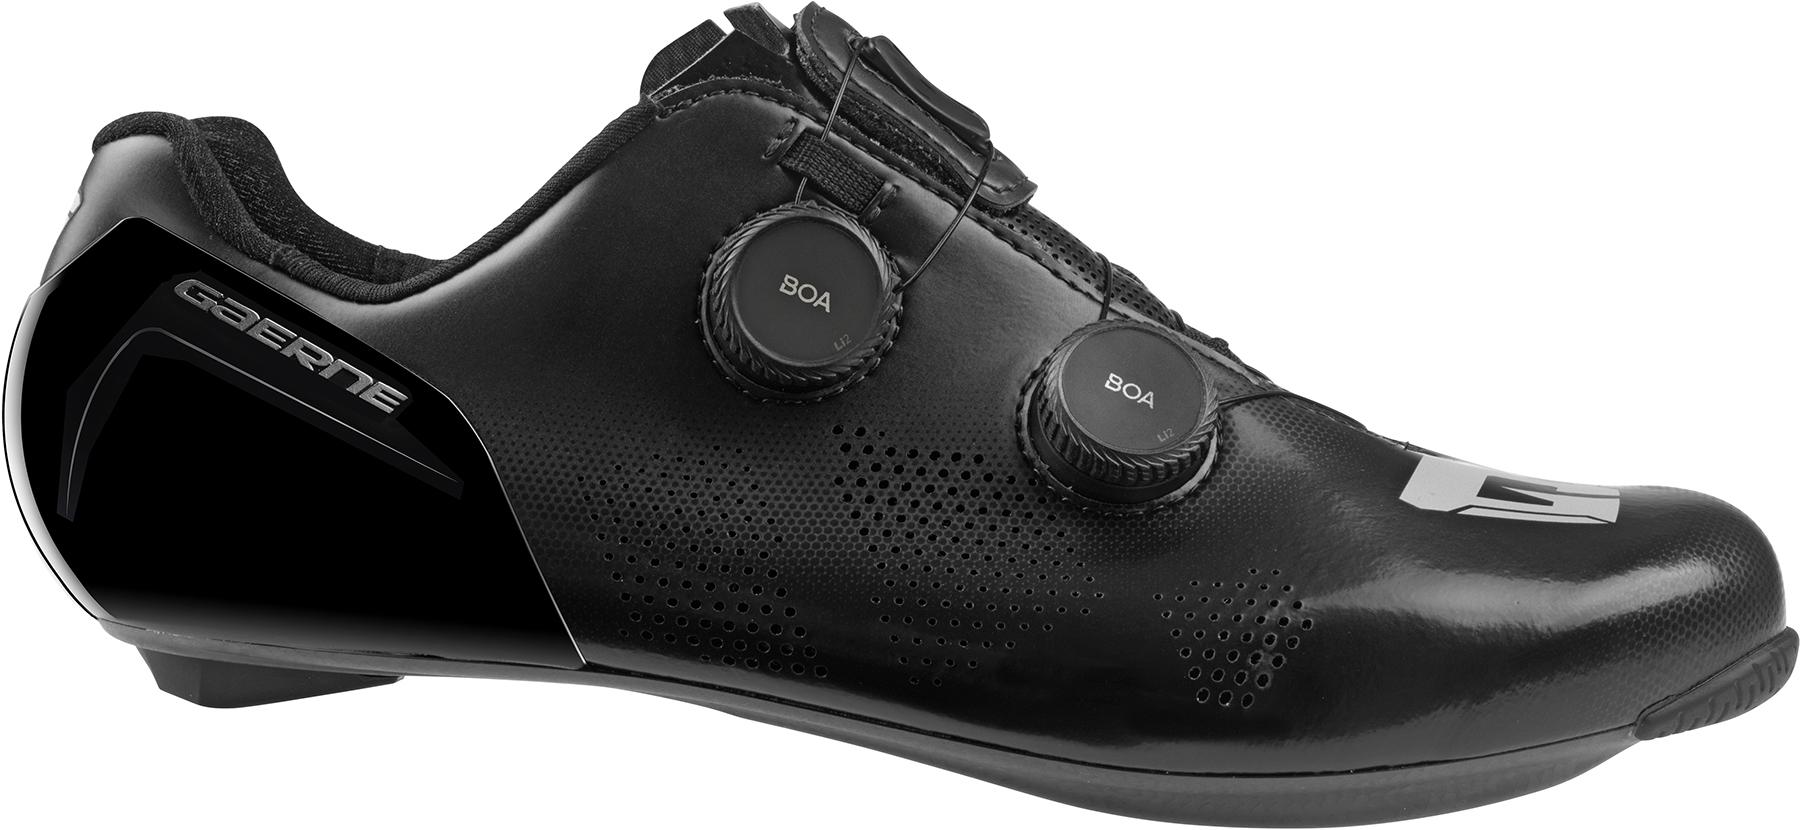 Gaerne Carbon G.stl Shoes - Black